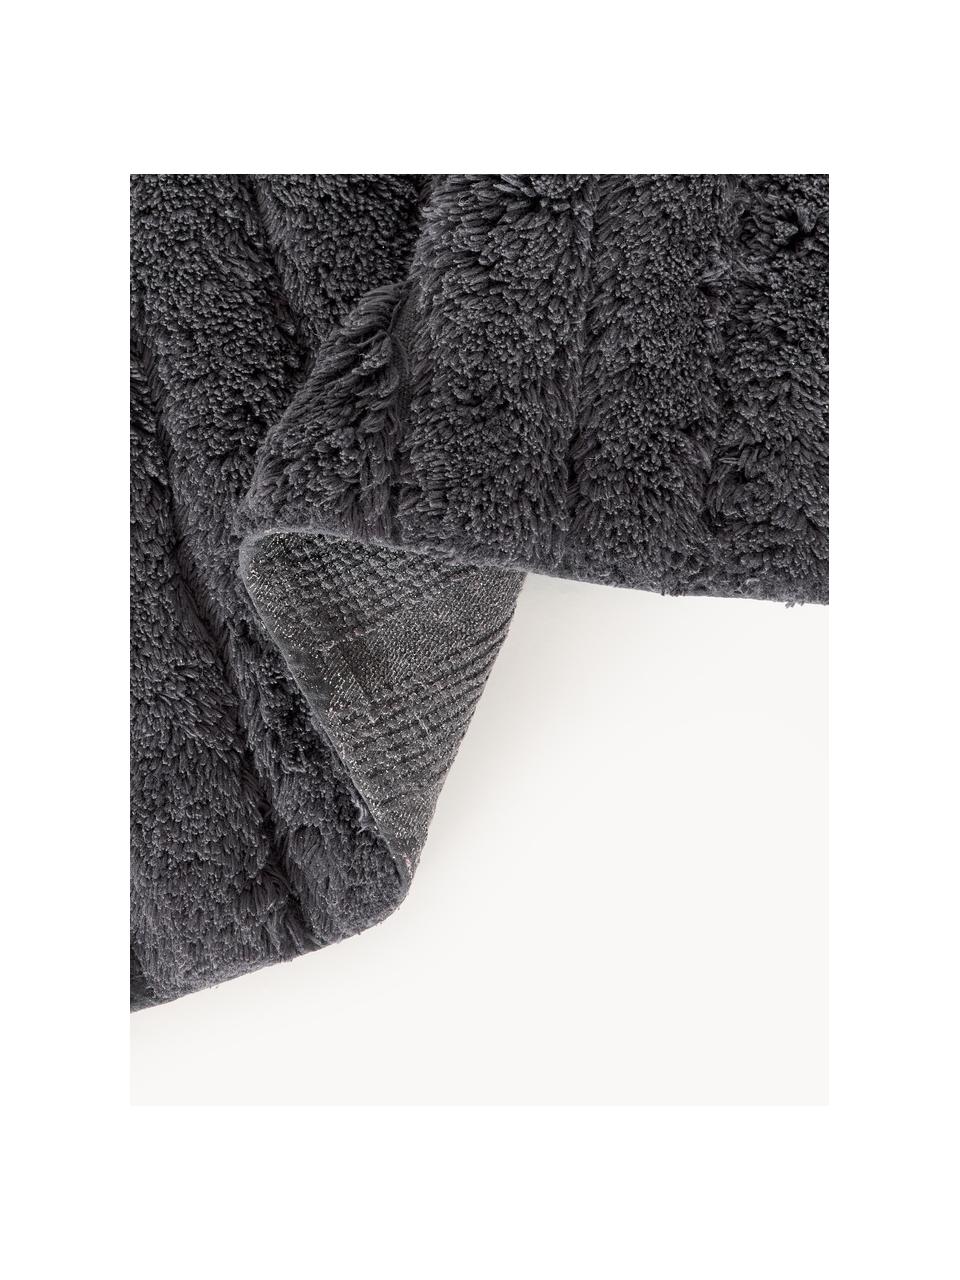 Puszysty dywanik łazienkowy Bailey, 100% bawełna

Ten produkt został przetestowany pod kątem substancji szkodliwych i certyfikowany zgodnie z STANDARD 100 by OEKO-TEX®21.HIN.45298 HOHENSTEIN HTTI, Antracytowy, S 50 x D 70 cm